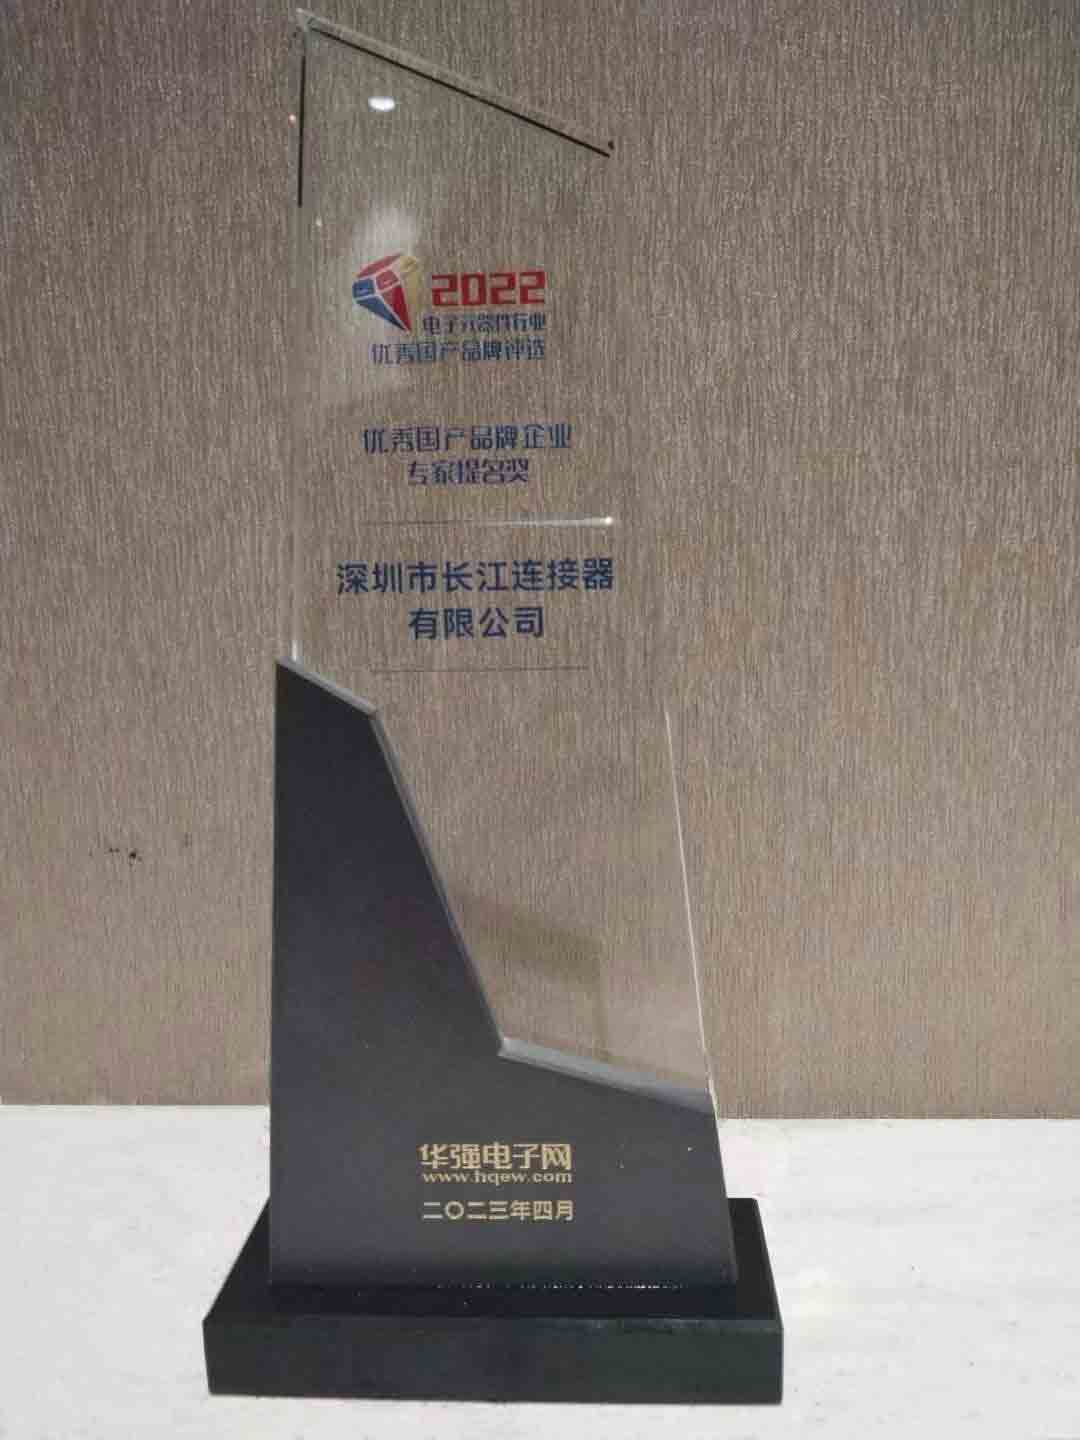 CJT喜获优秀国产品牌企业专家提名奖